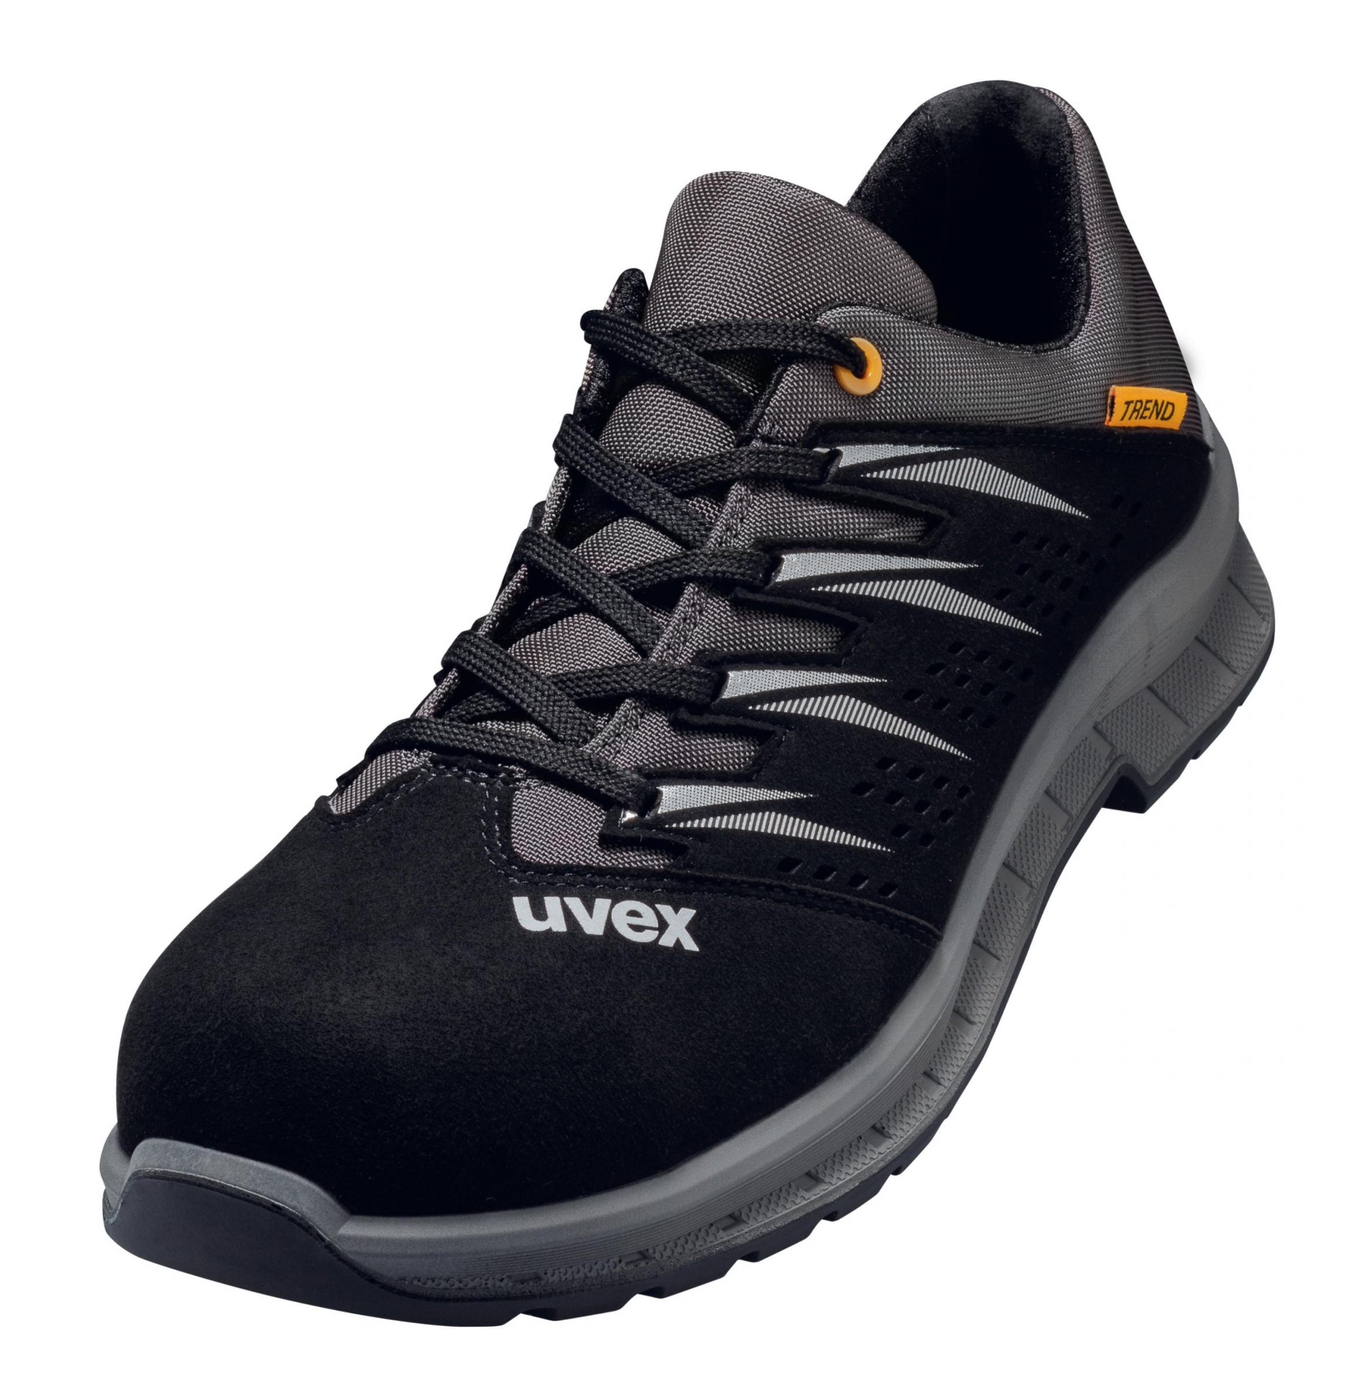 Obuv UVEX preforovaná,čierno šedá č.42 6947842 - Pracovná obuv | MasMasaryk